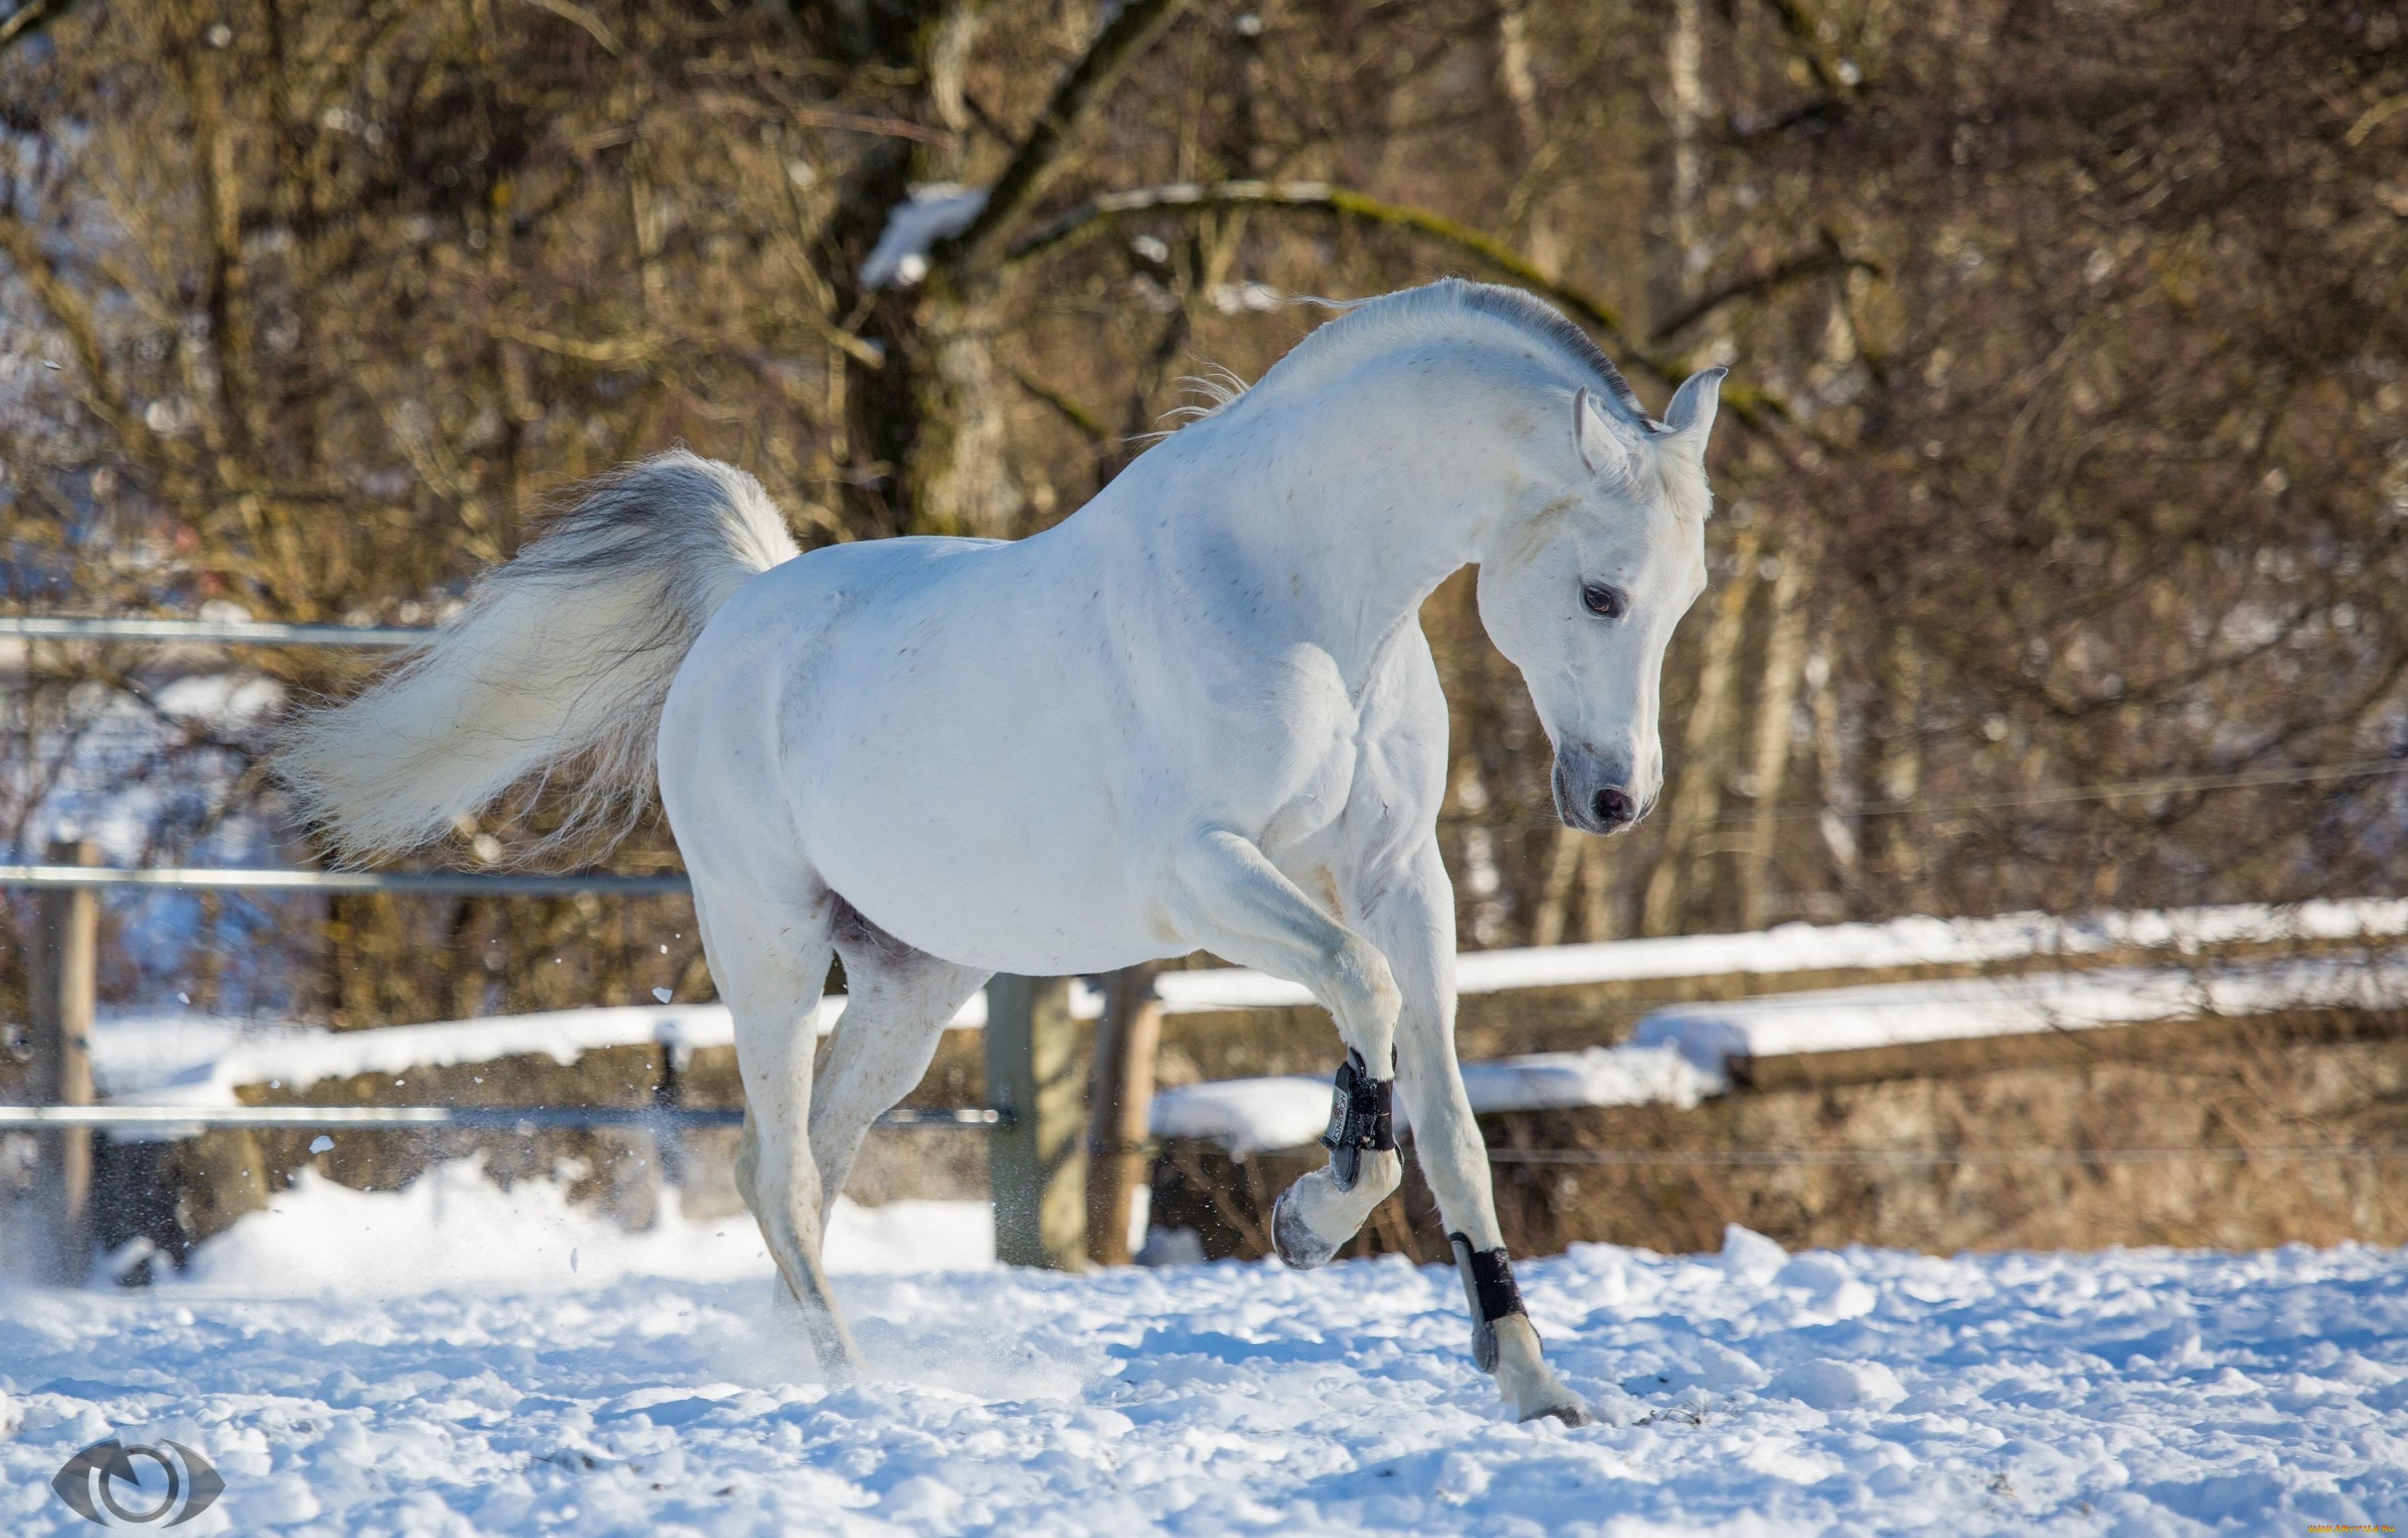 автор, , oliverseitz, животные, лошади, конь, белый, движение, грация, поза, игривый, красавец, зима, снег, загон